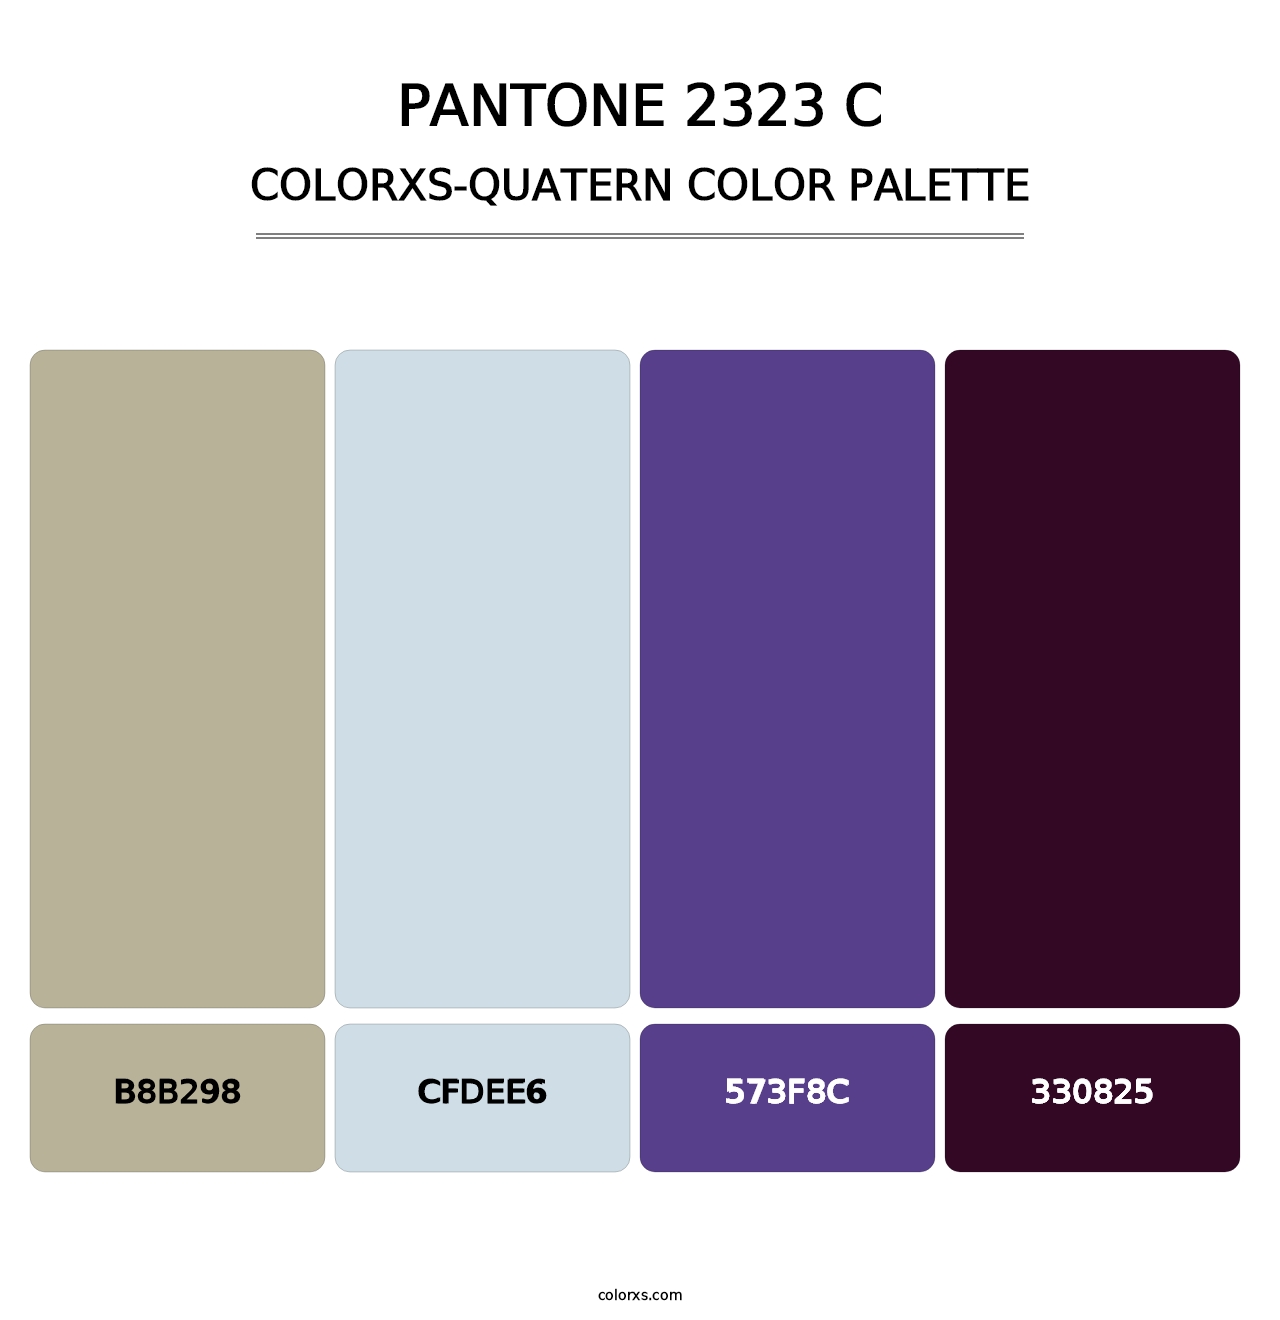 PANTONE 2323 C - Colorxs Quatern Palette